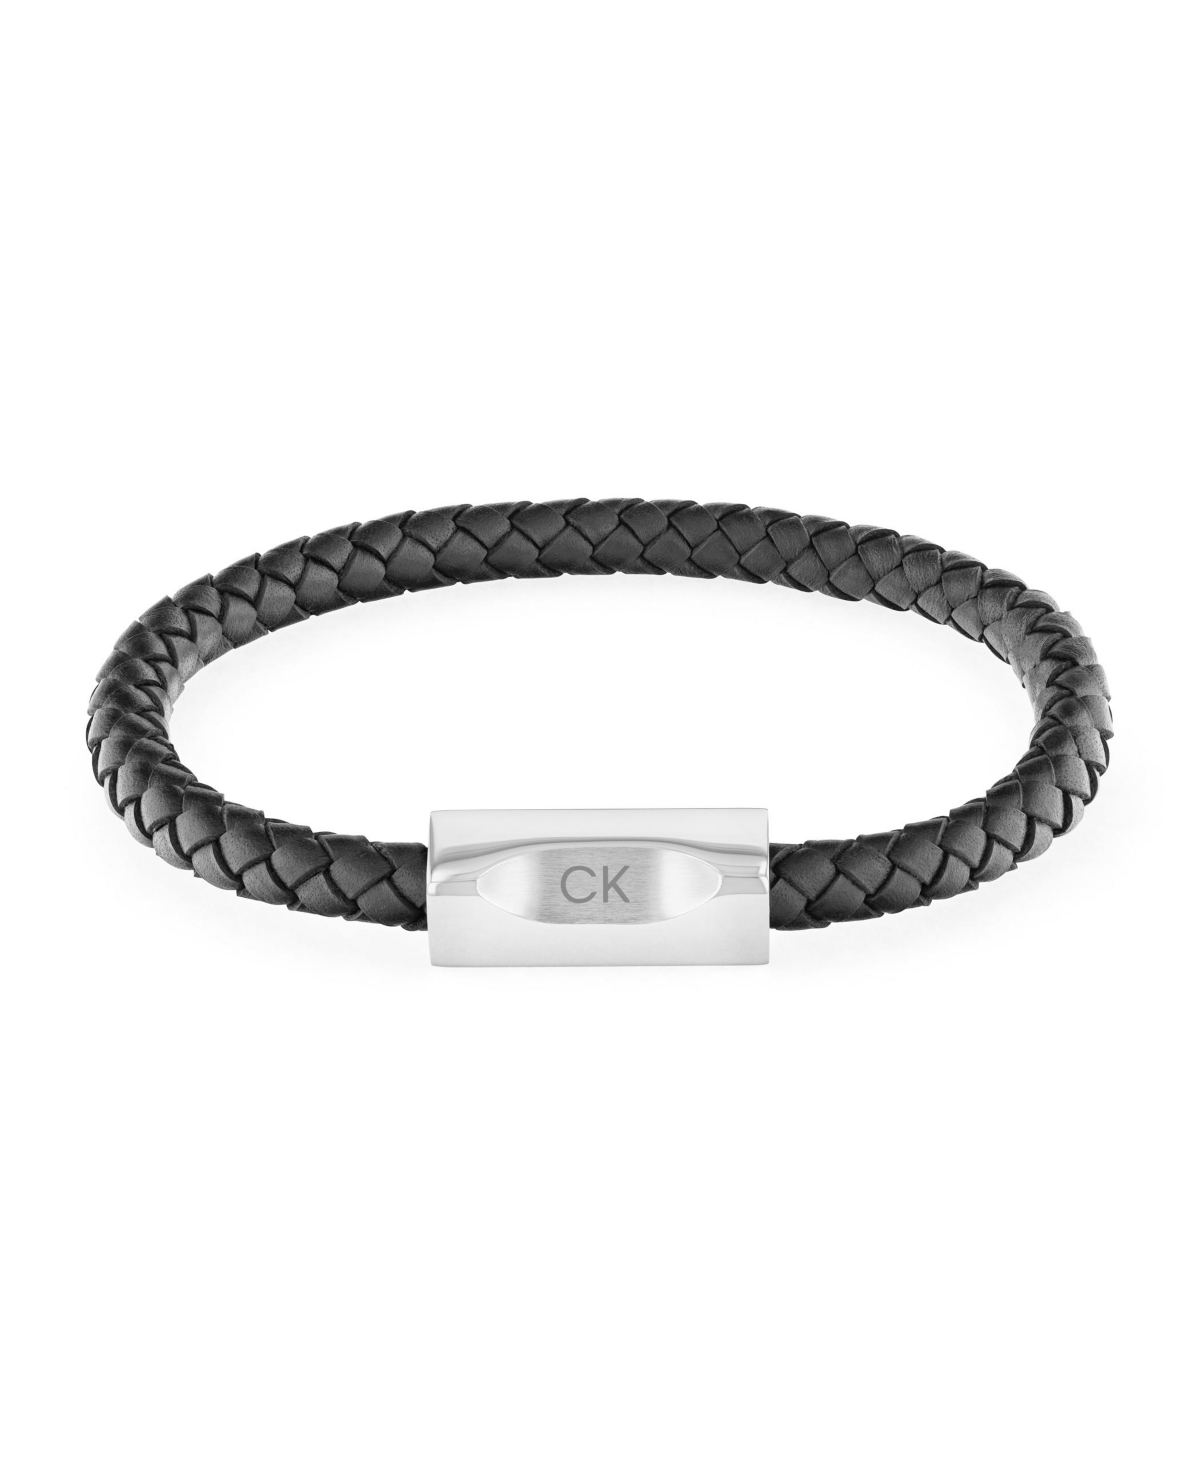 Men's Stainless Steel Black Braided Leather Bracelet - Black